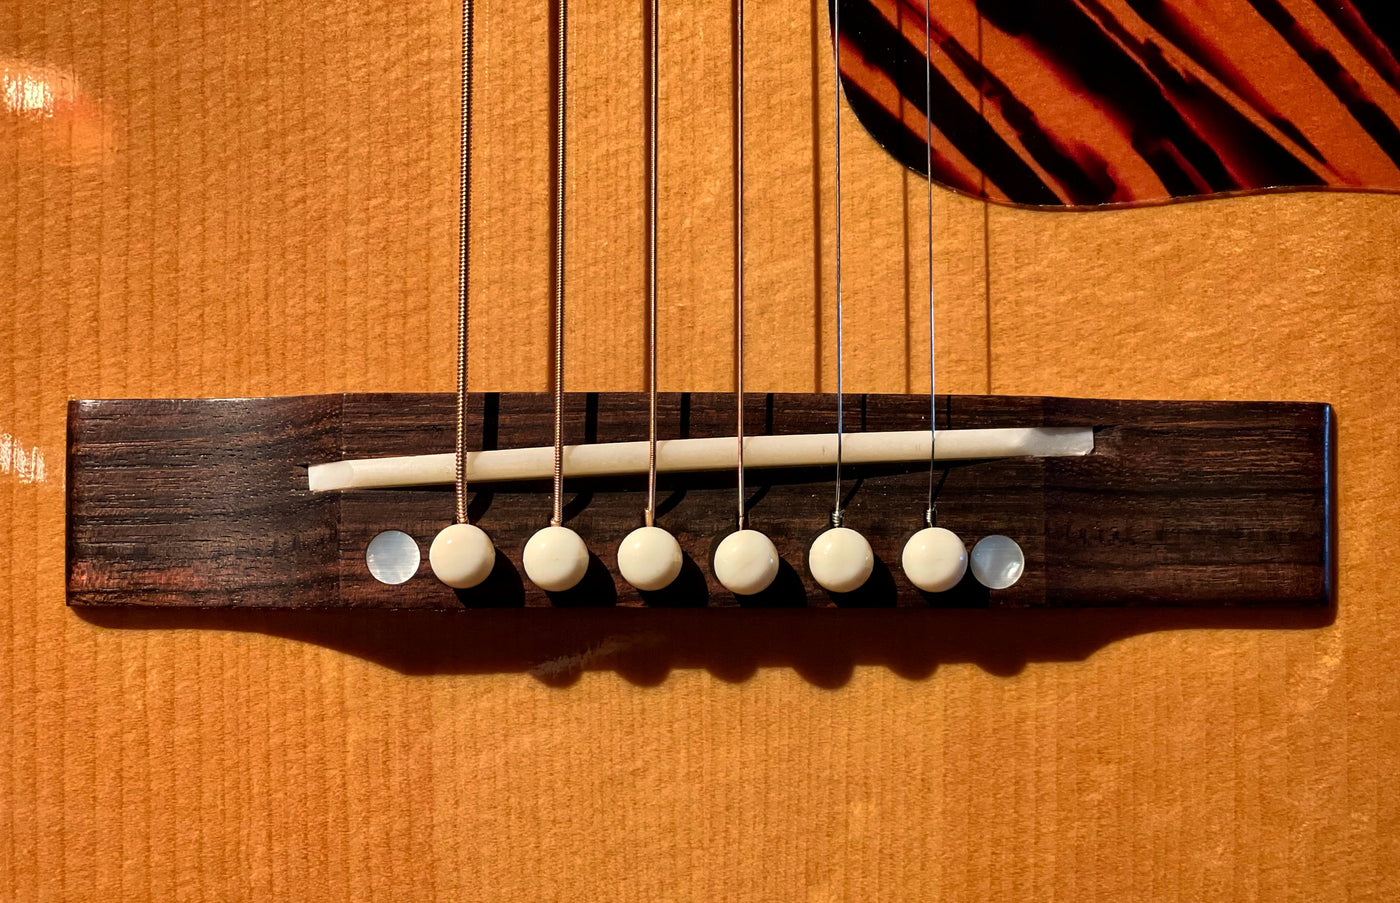 Acoustic Guitar Strings